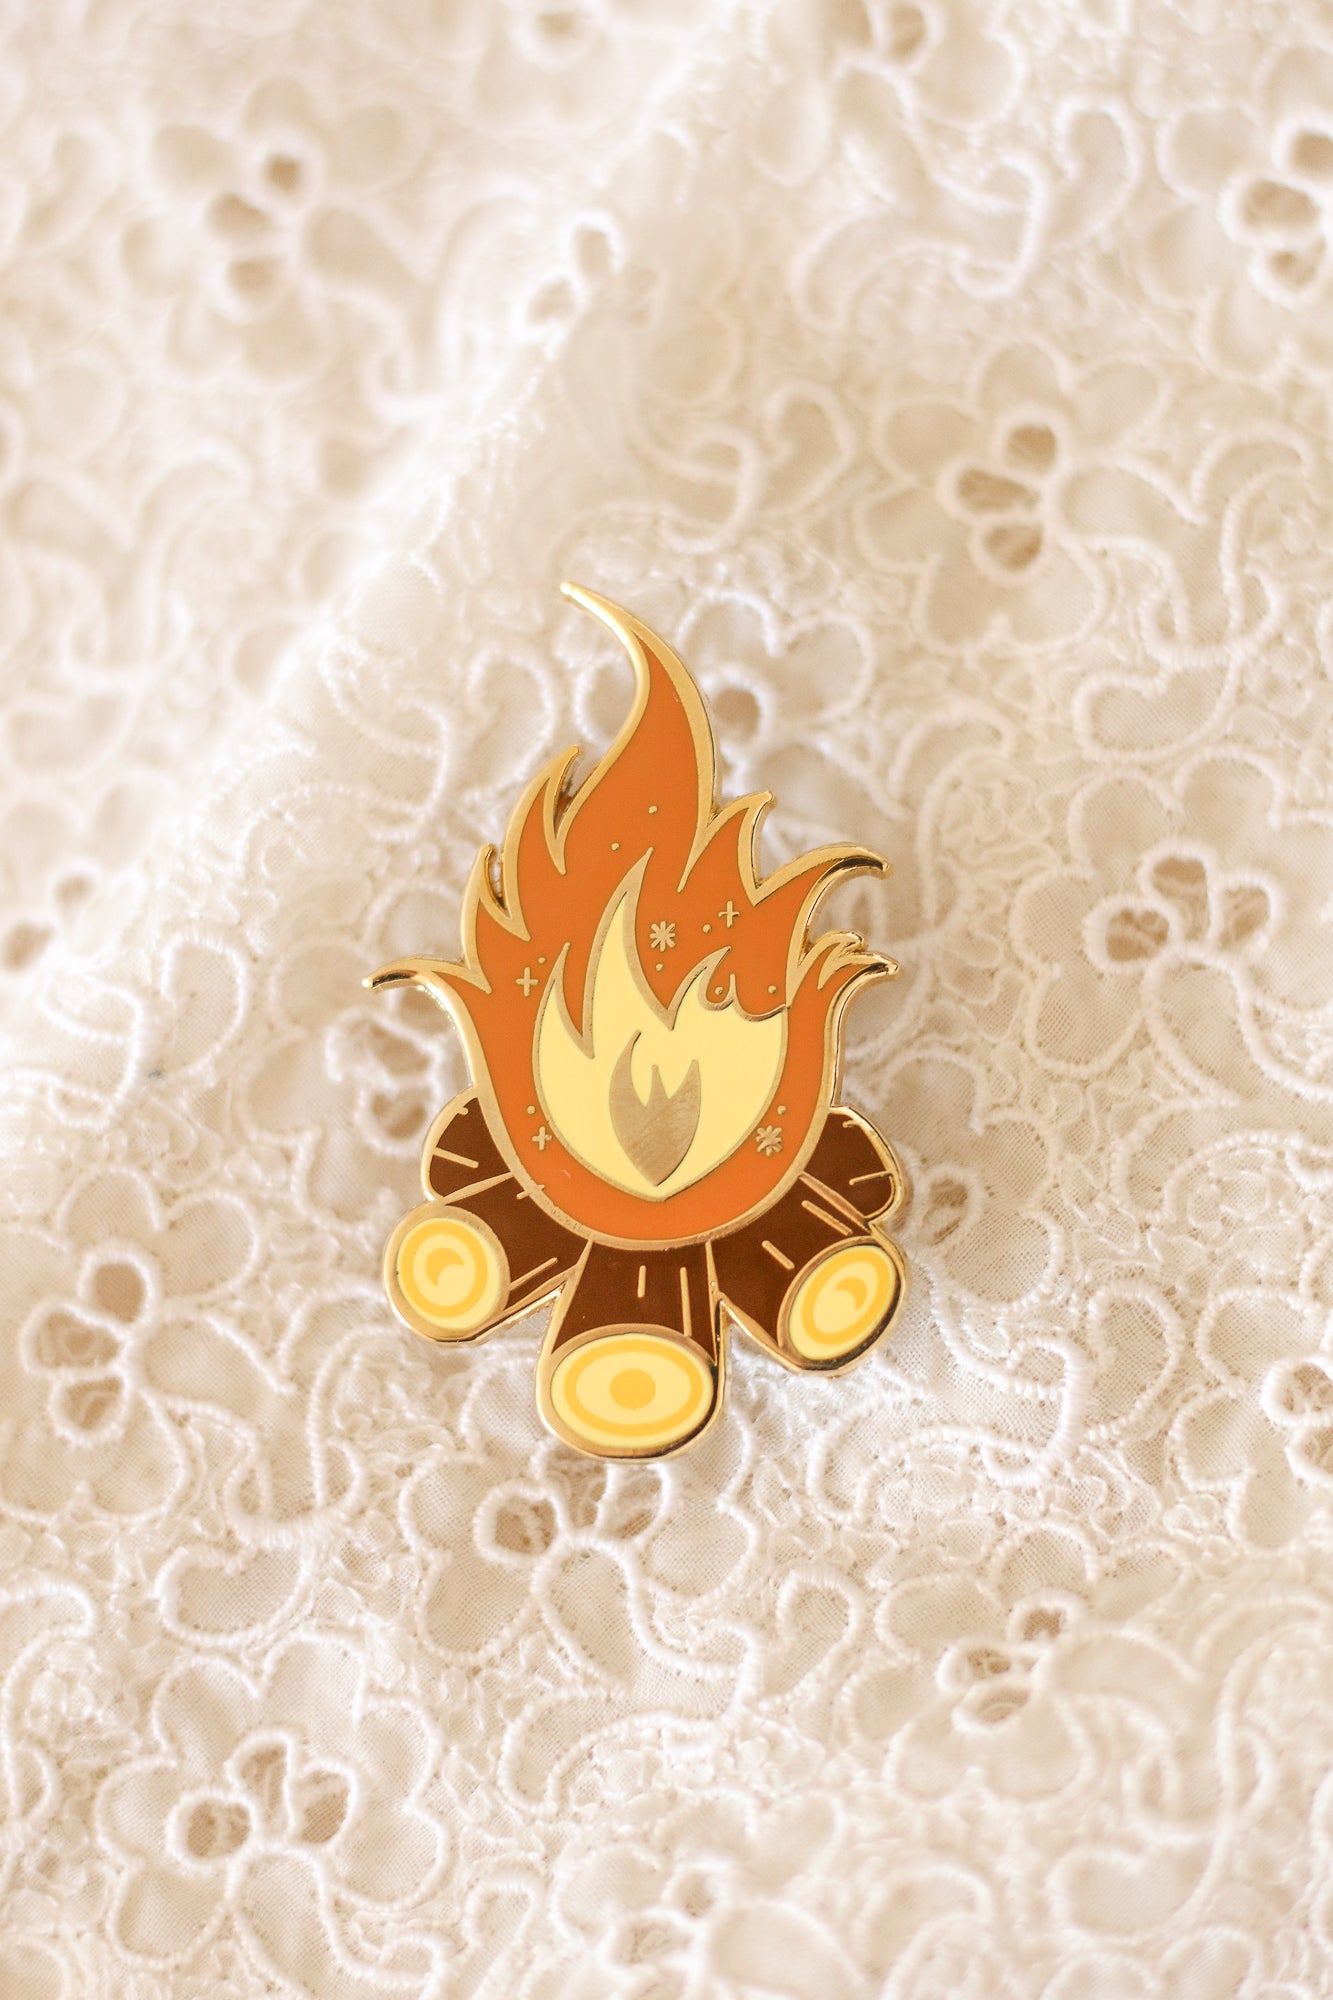 Campfire pin